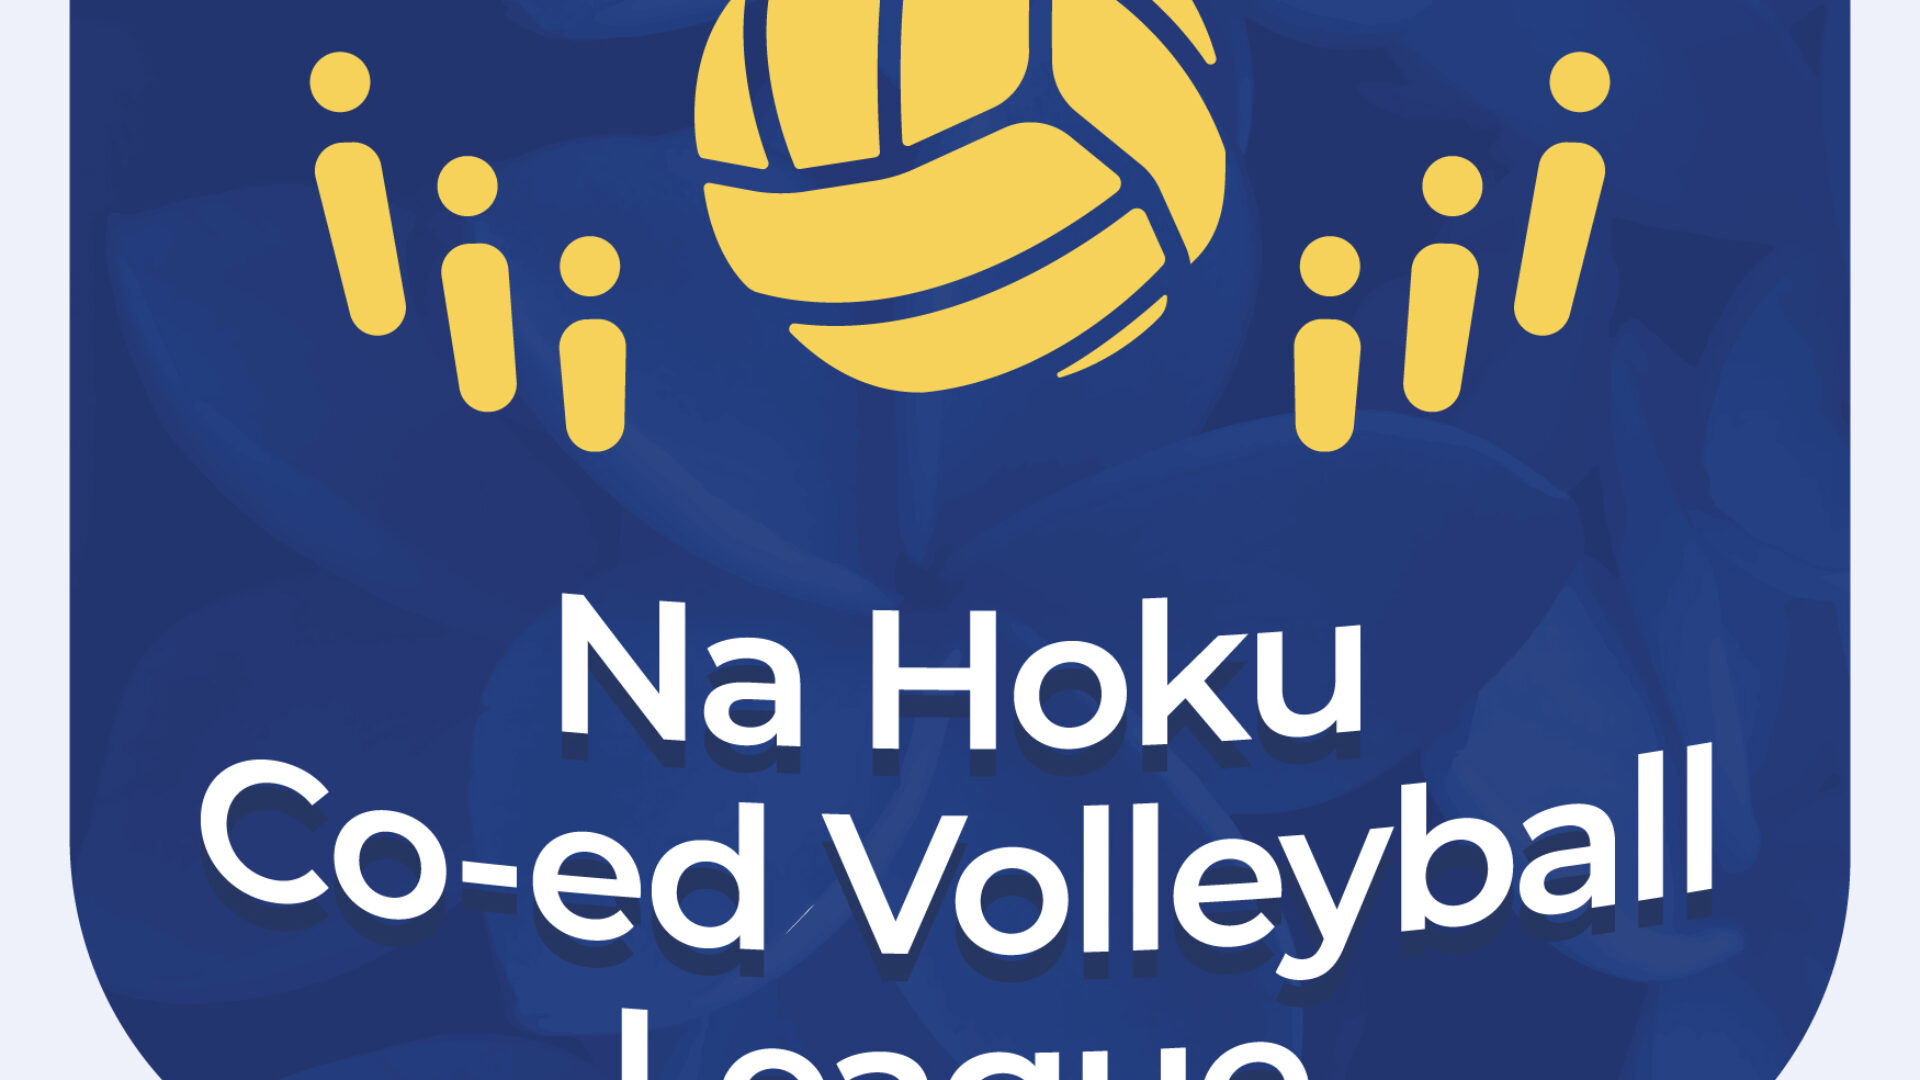 Na Hoku Co-ed Volleyball League